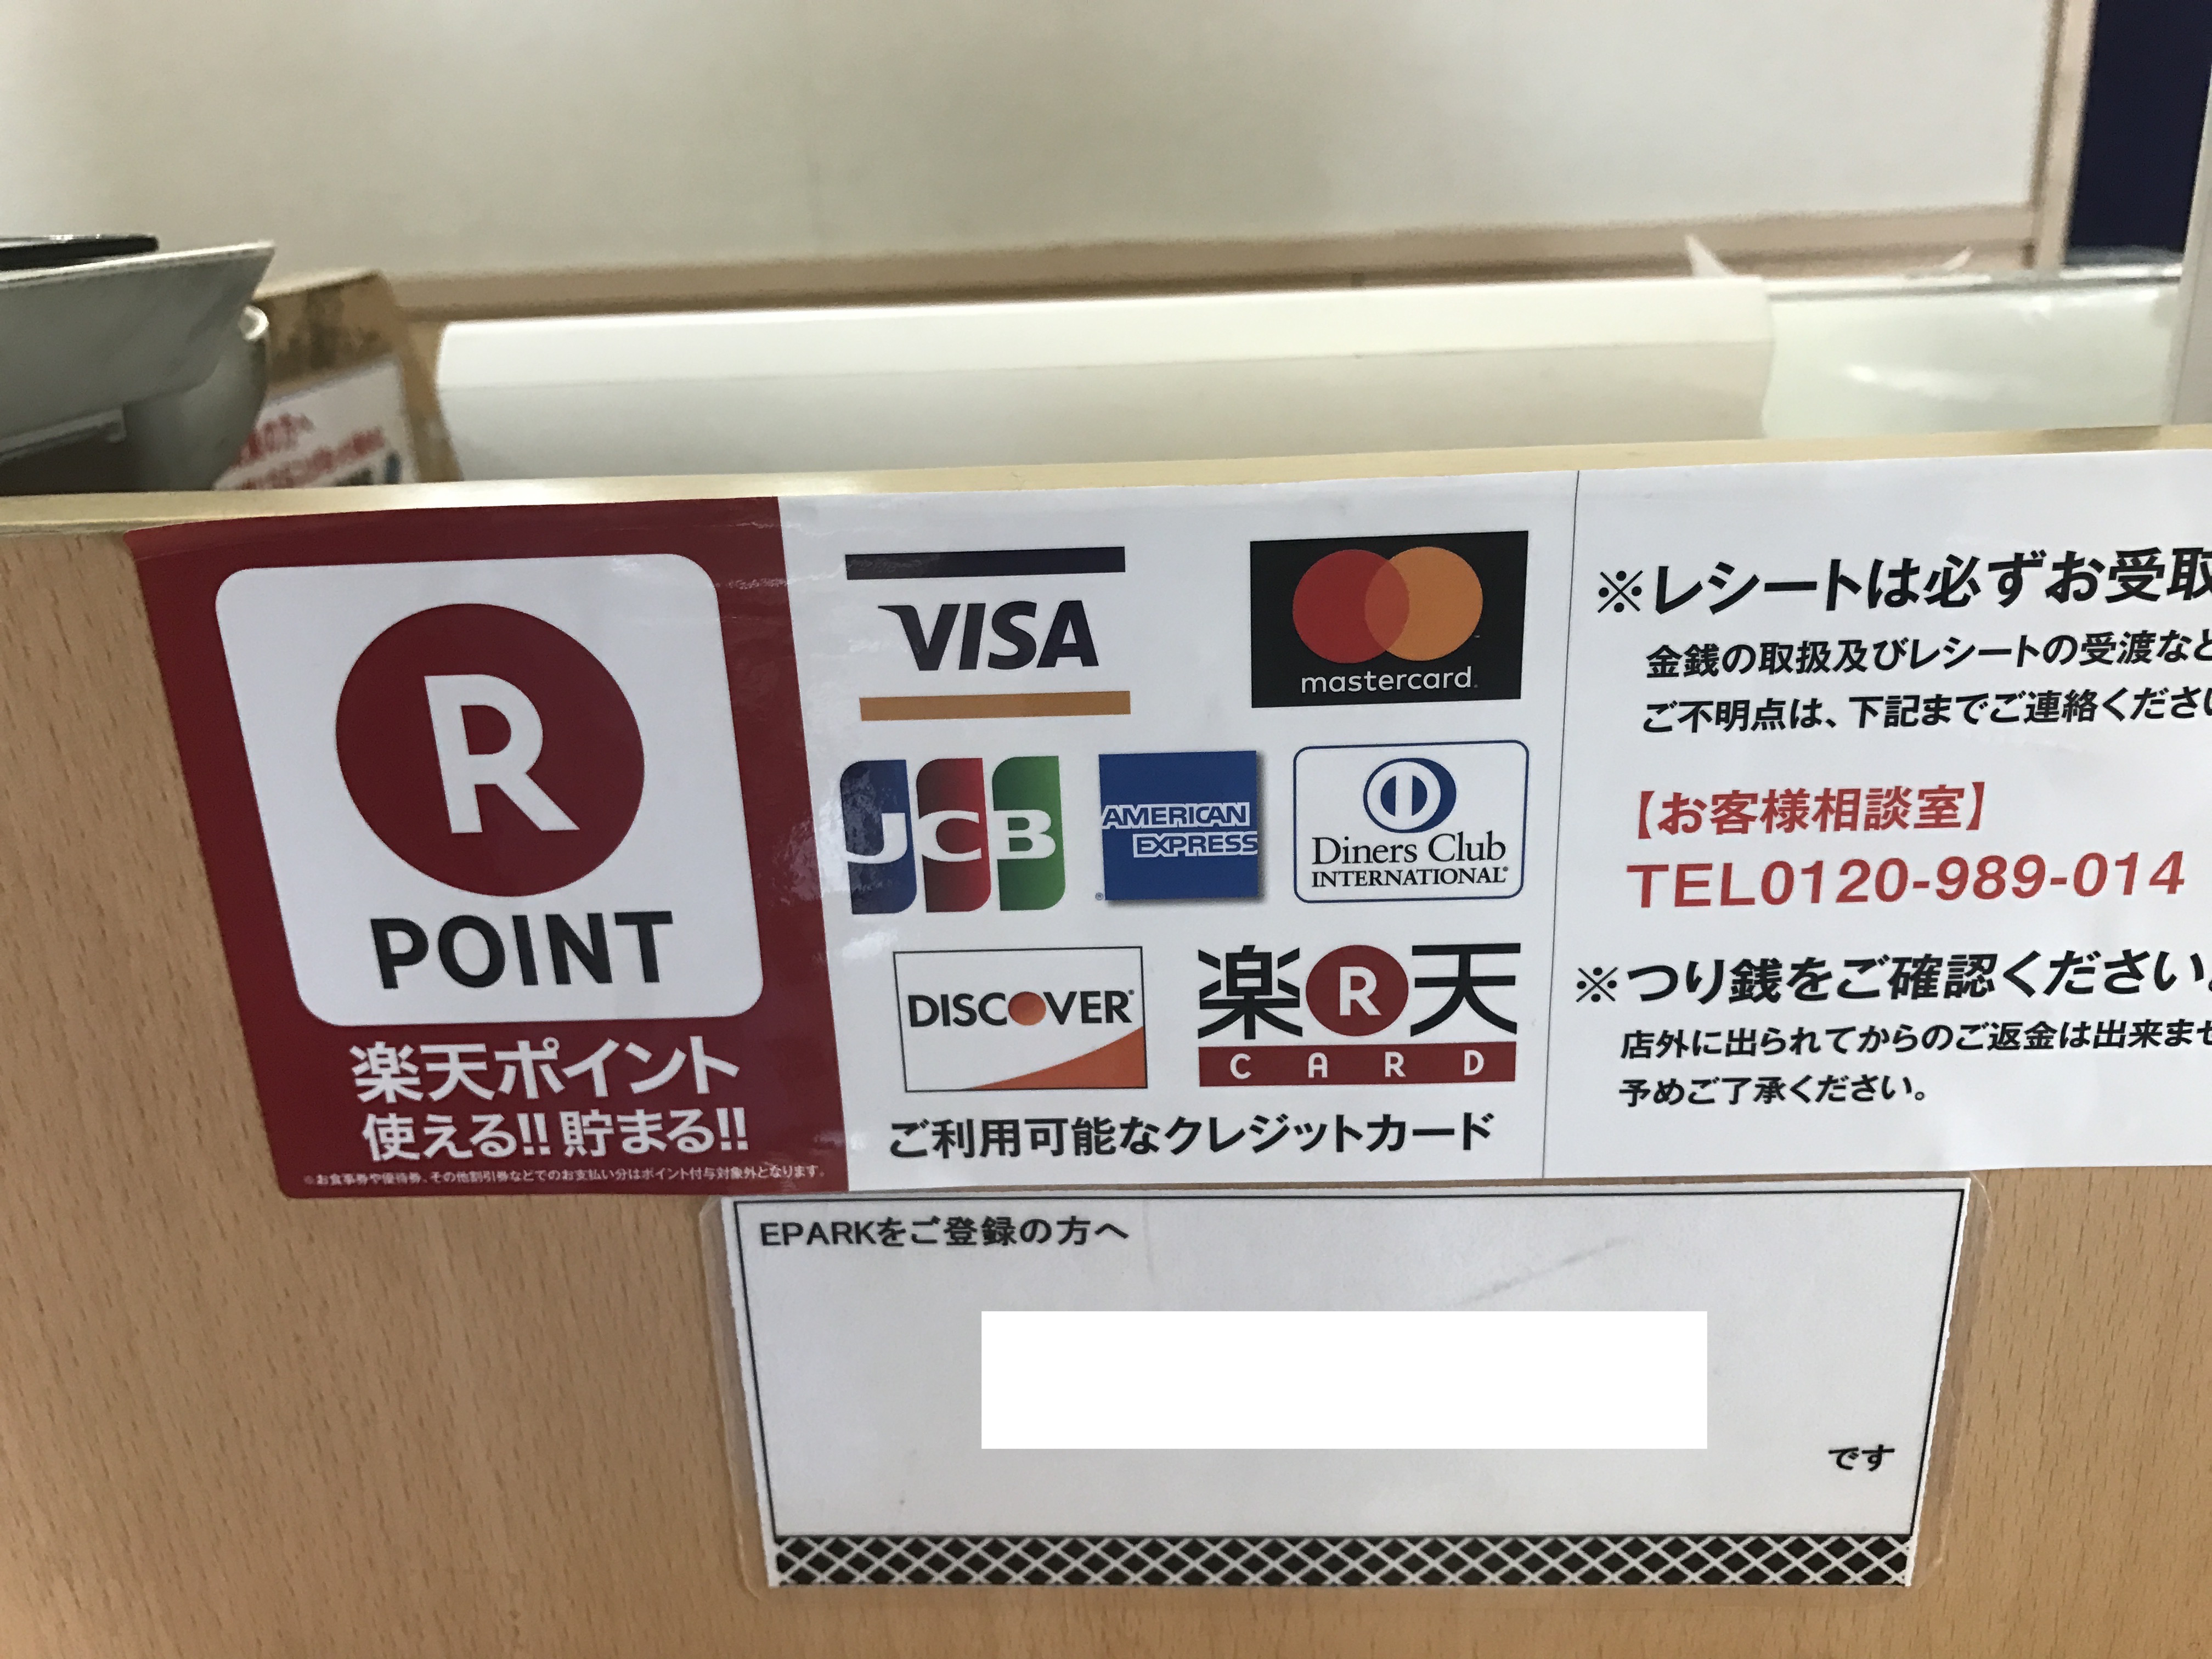 くら寿司 クレジットカード